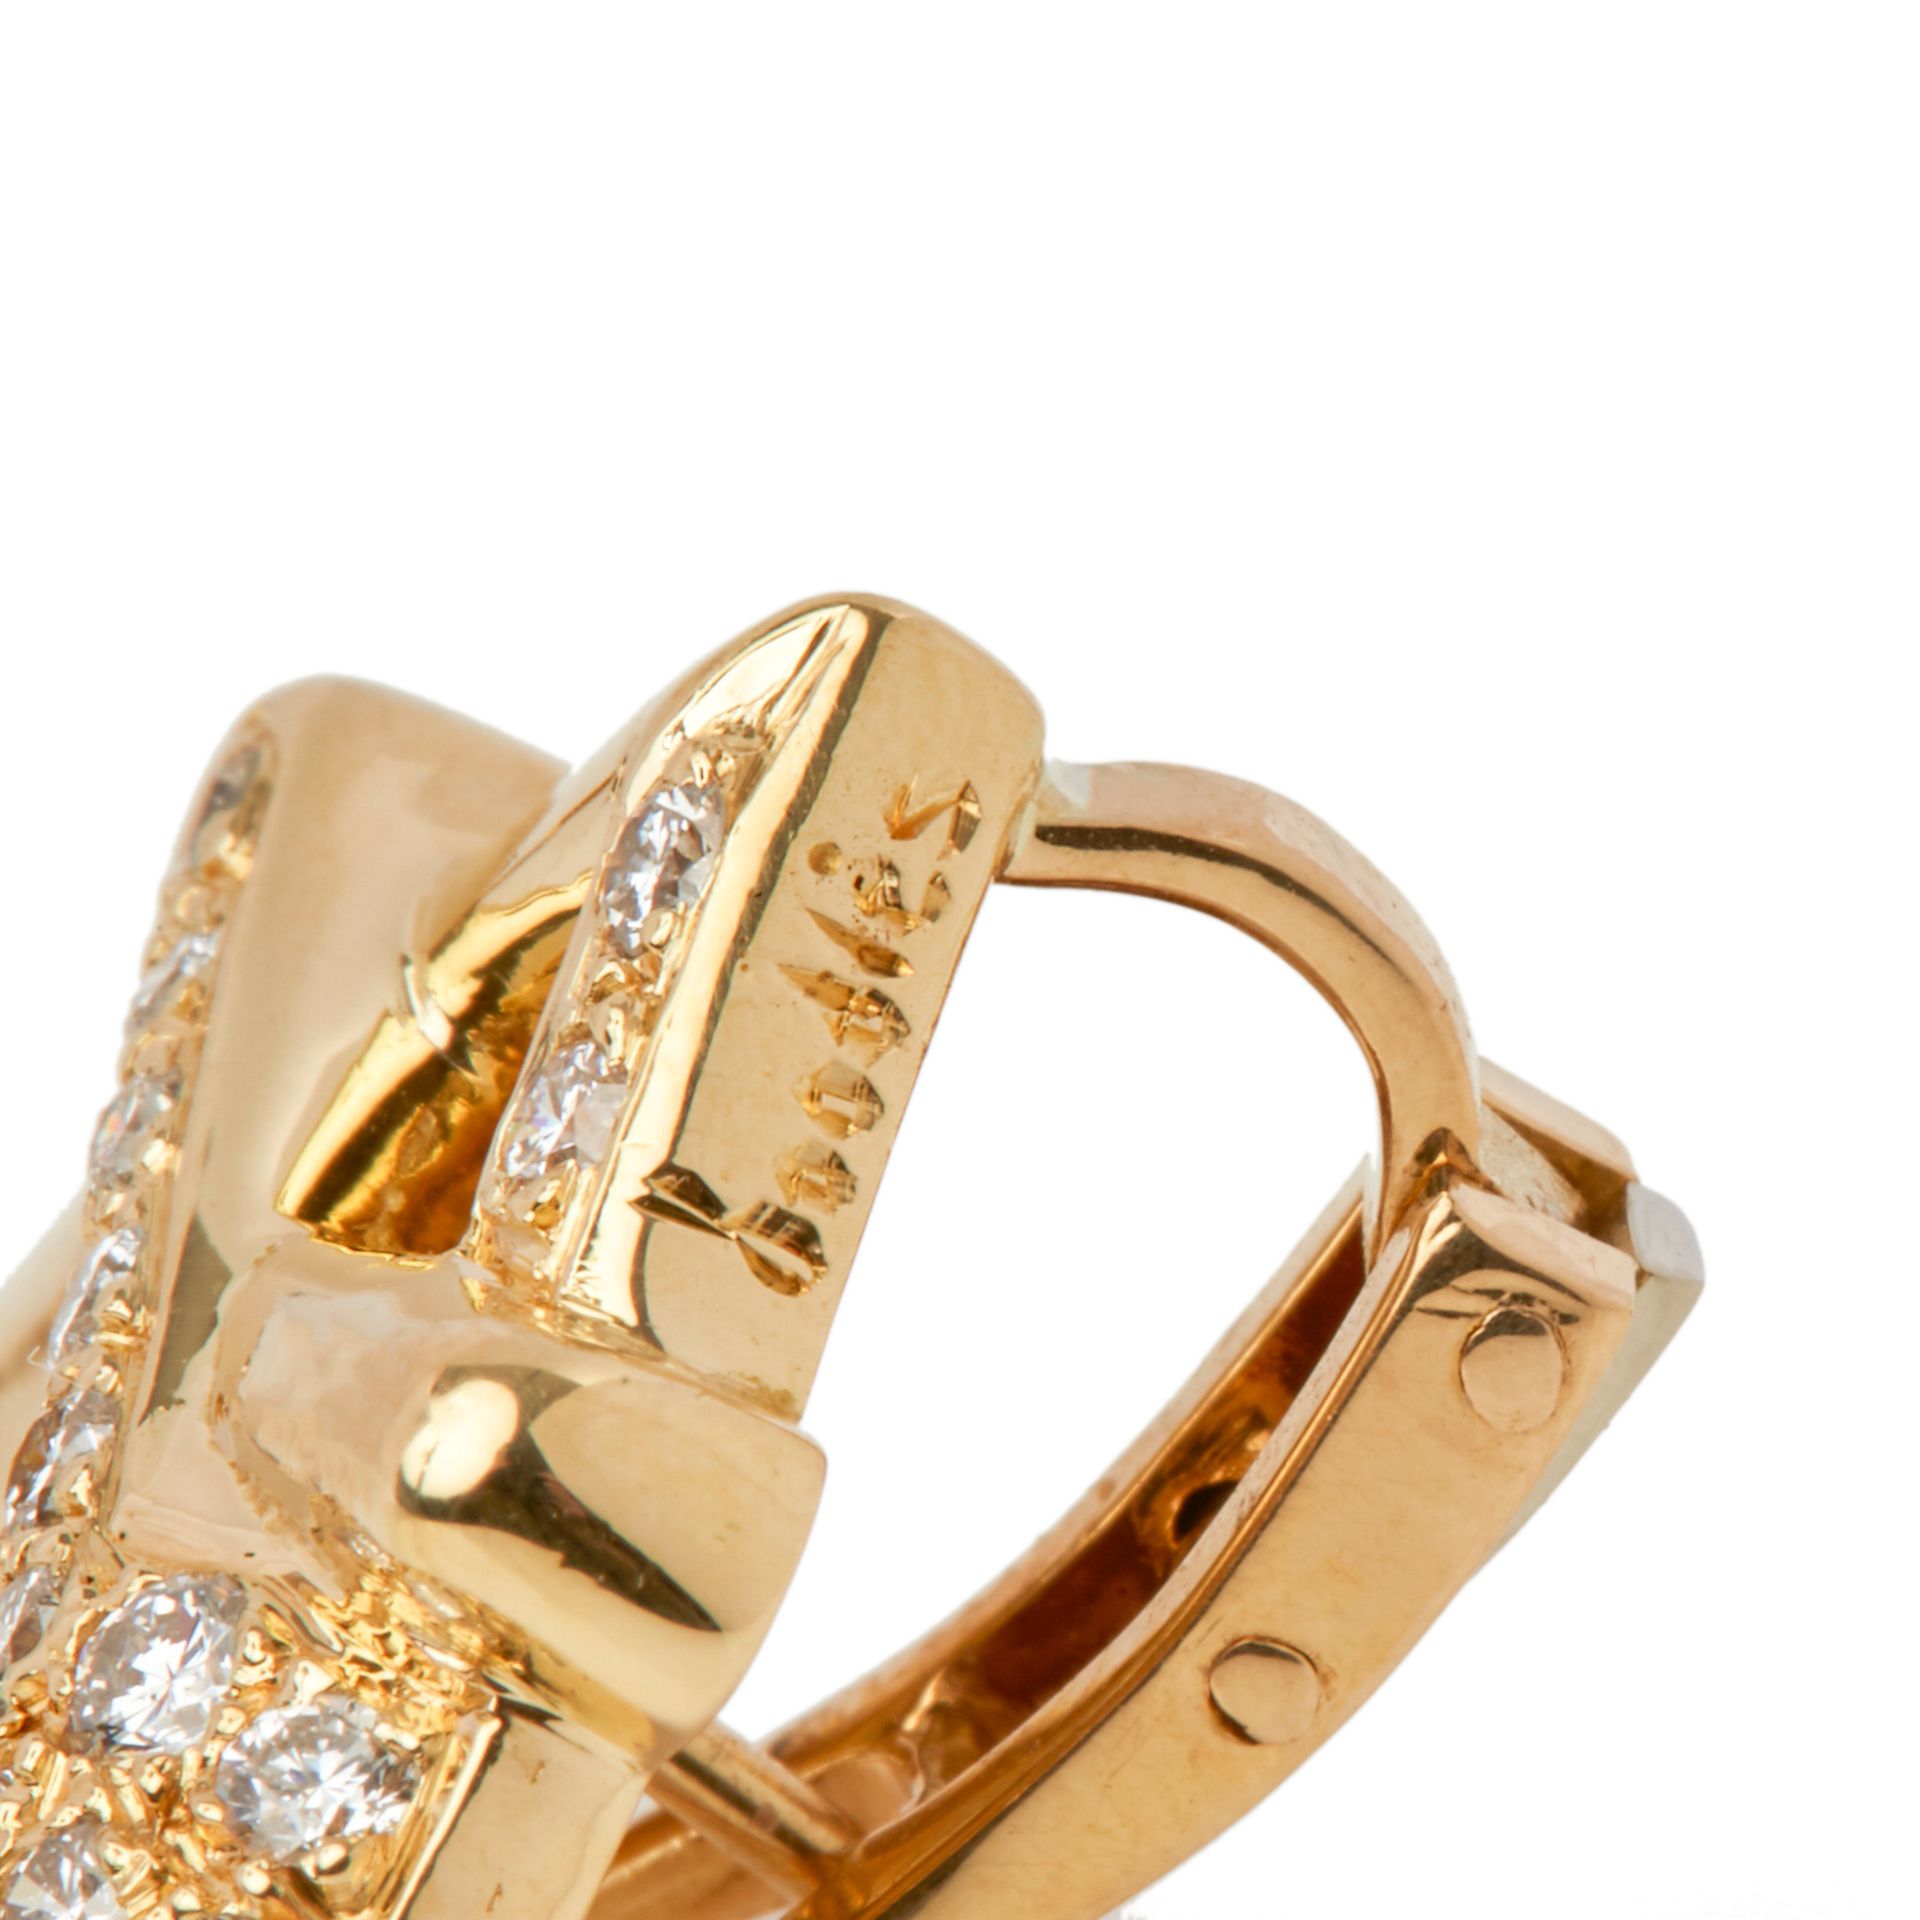 18k Yellow Gold Diamond Hug Earrings - Image 3 of 8